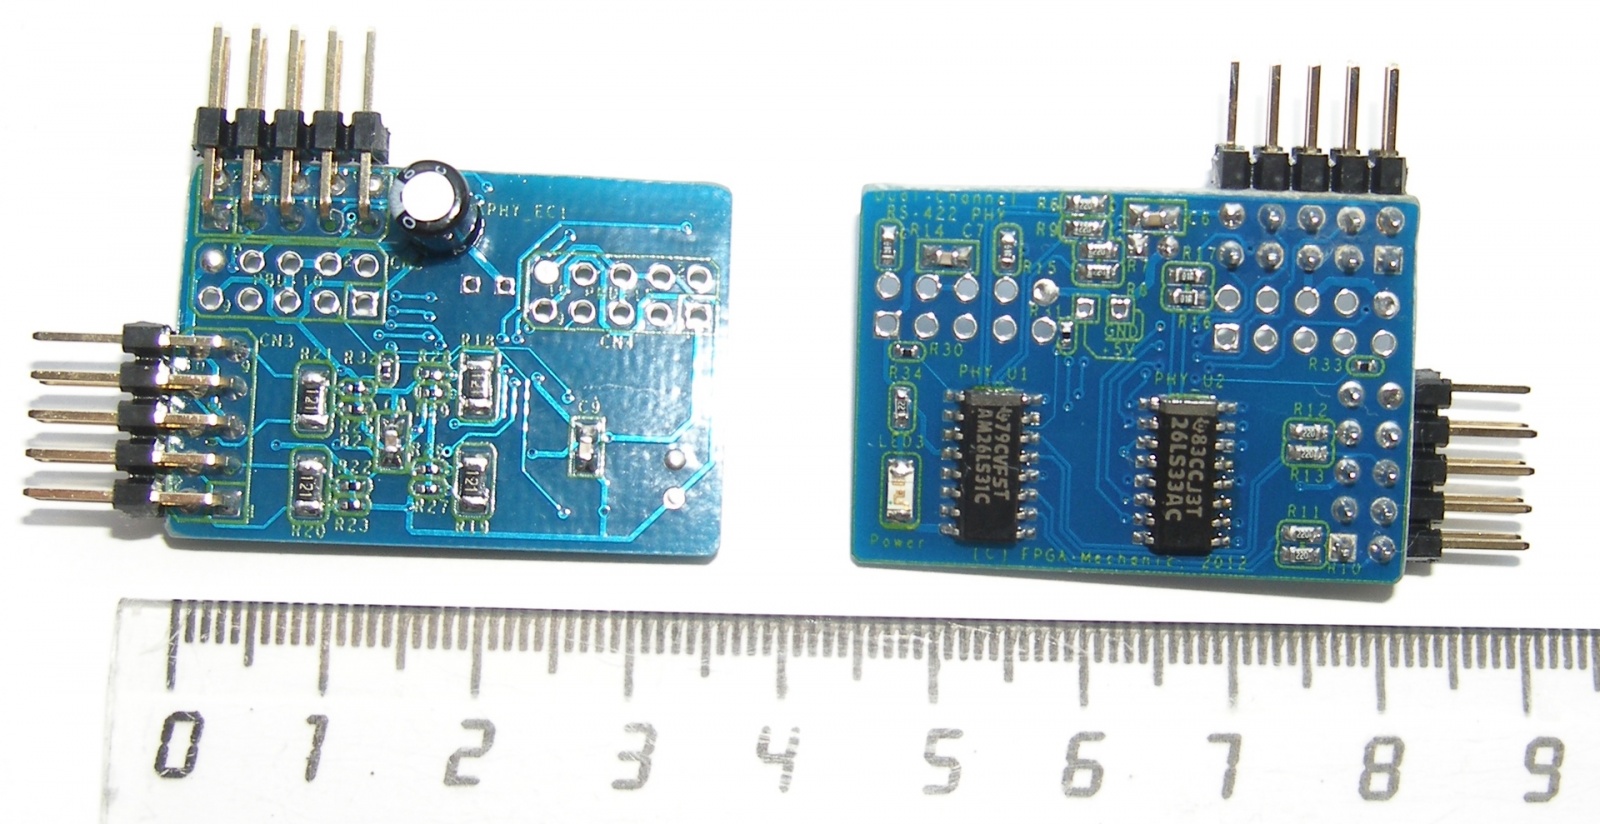 Адаптеры сопряжения RS-422 с поддержкой скоростей до 1Мбод для системной шины PCI - 22